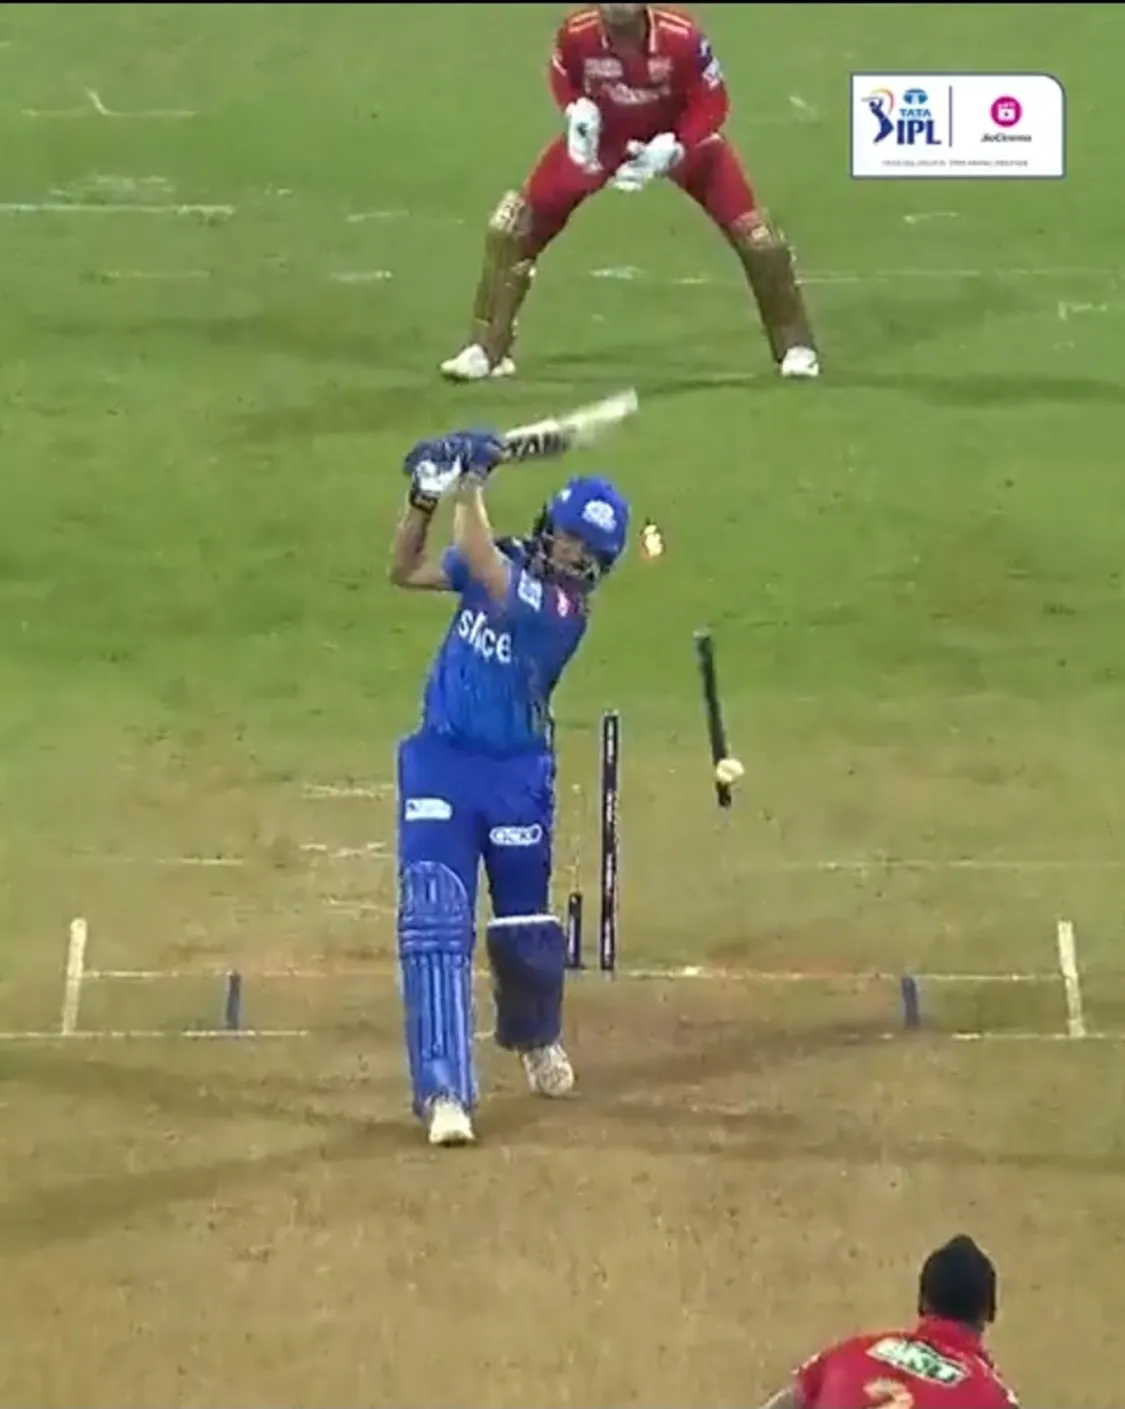 देखें: अर्शदीप का कमाल: IPL के आख़िरी ओवर की लगातार दो गेंदों में दो बार उड़ाये मिडिल स्टंप